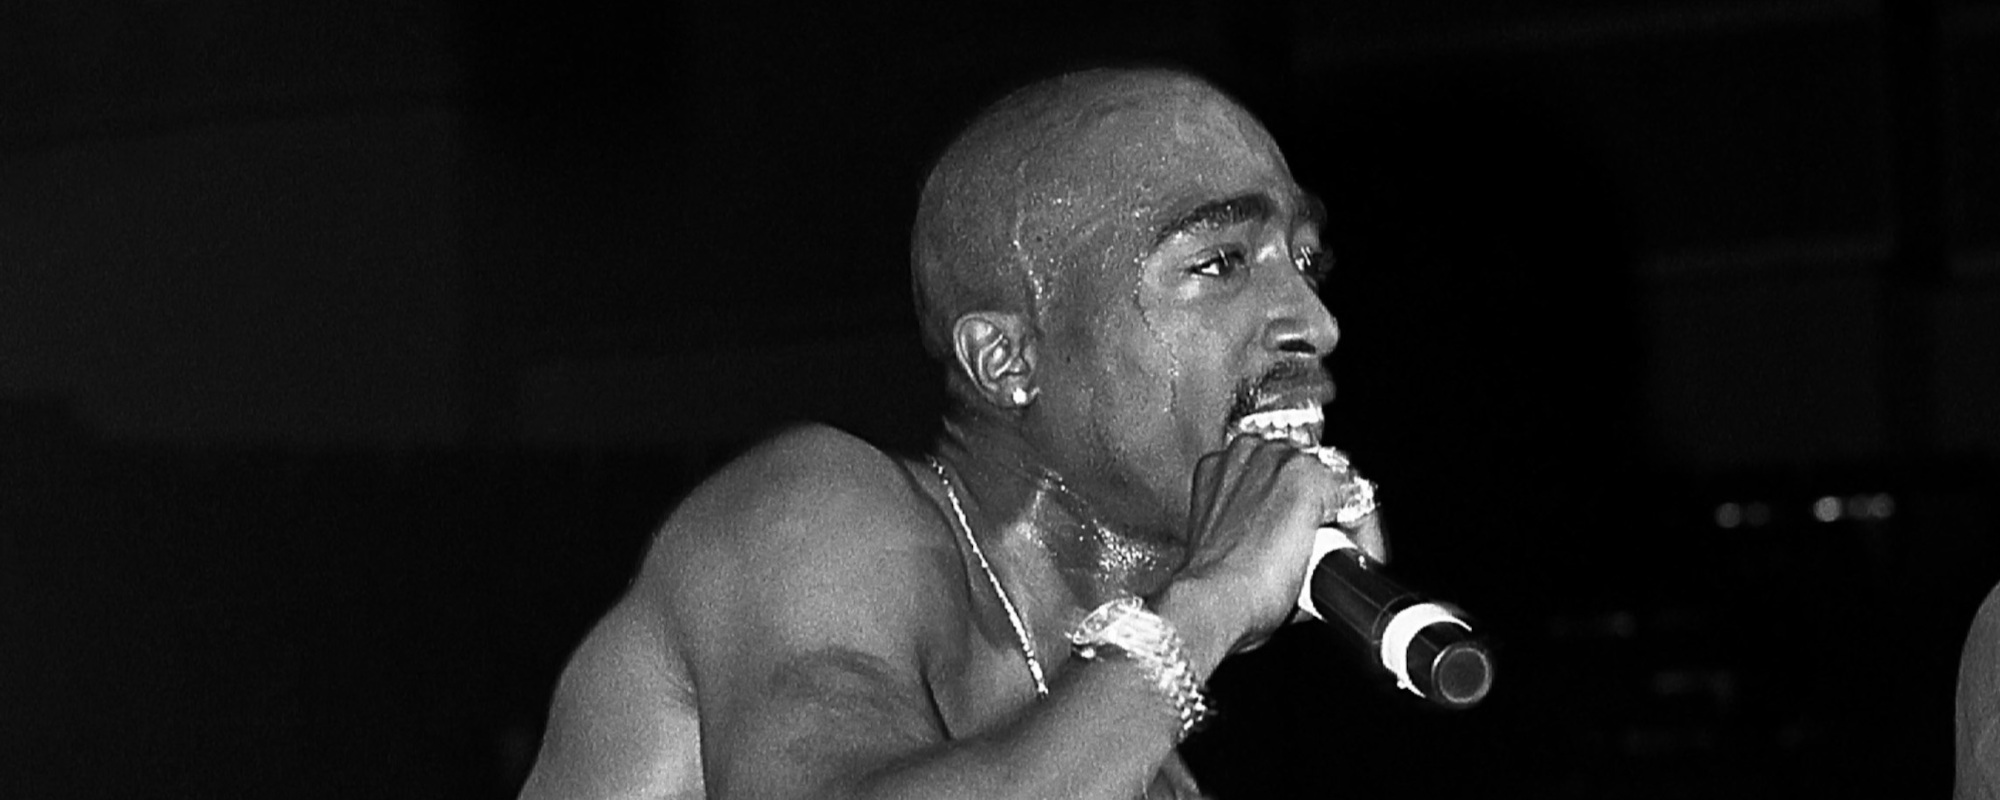 La police procède à une perquisition du domicile en lien avec le meurtre de Tupac